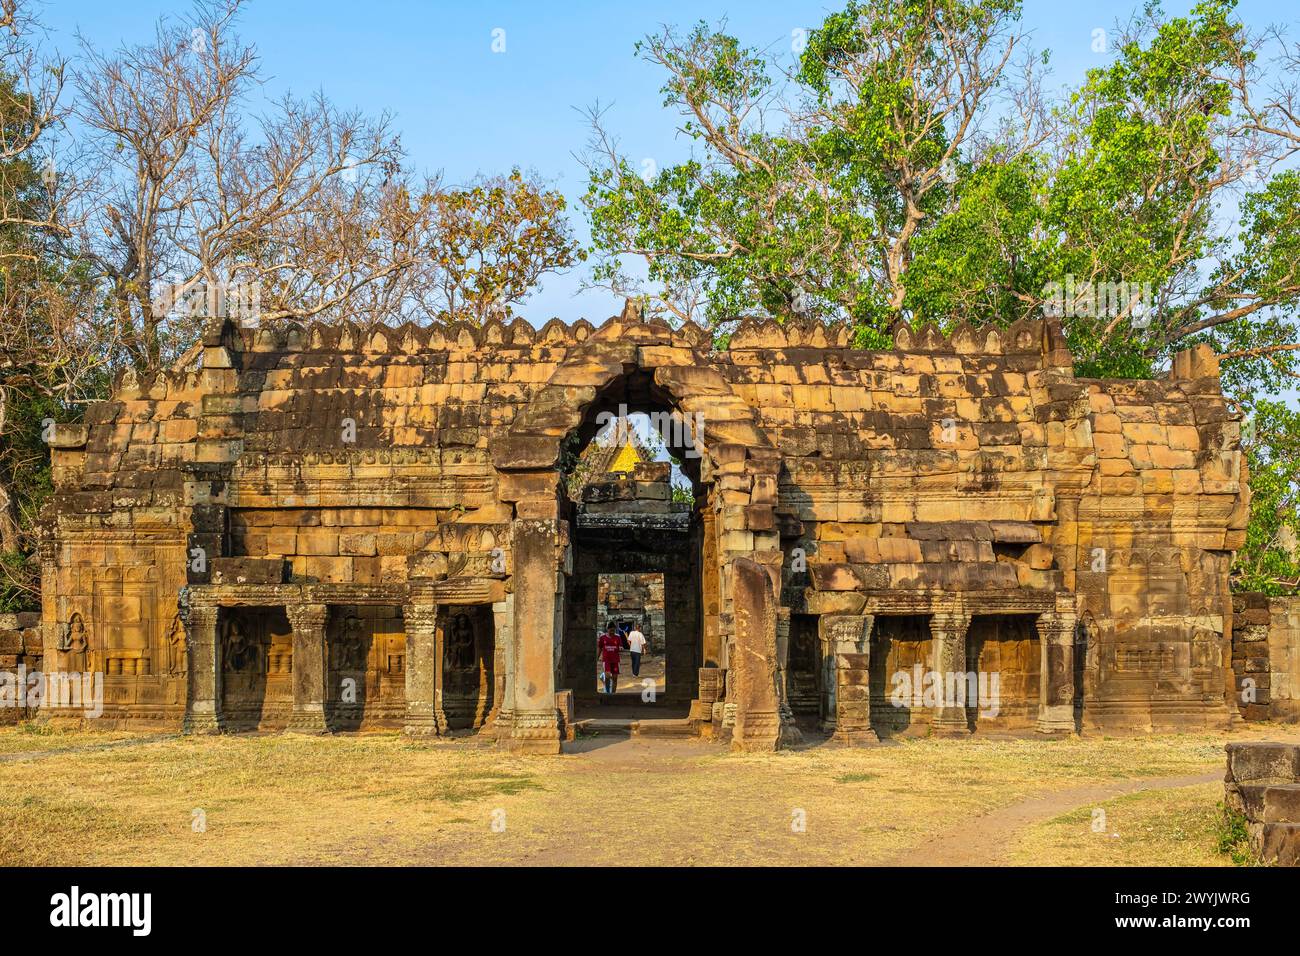 Cambodge, Kampong Cham, temple bouddhiste angkorien Vat Nokor (ou Nokor Bachey) construit au XIe siècle Banque D'Images